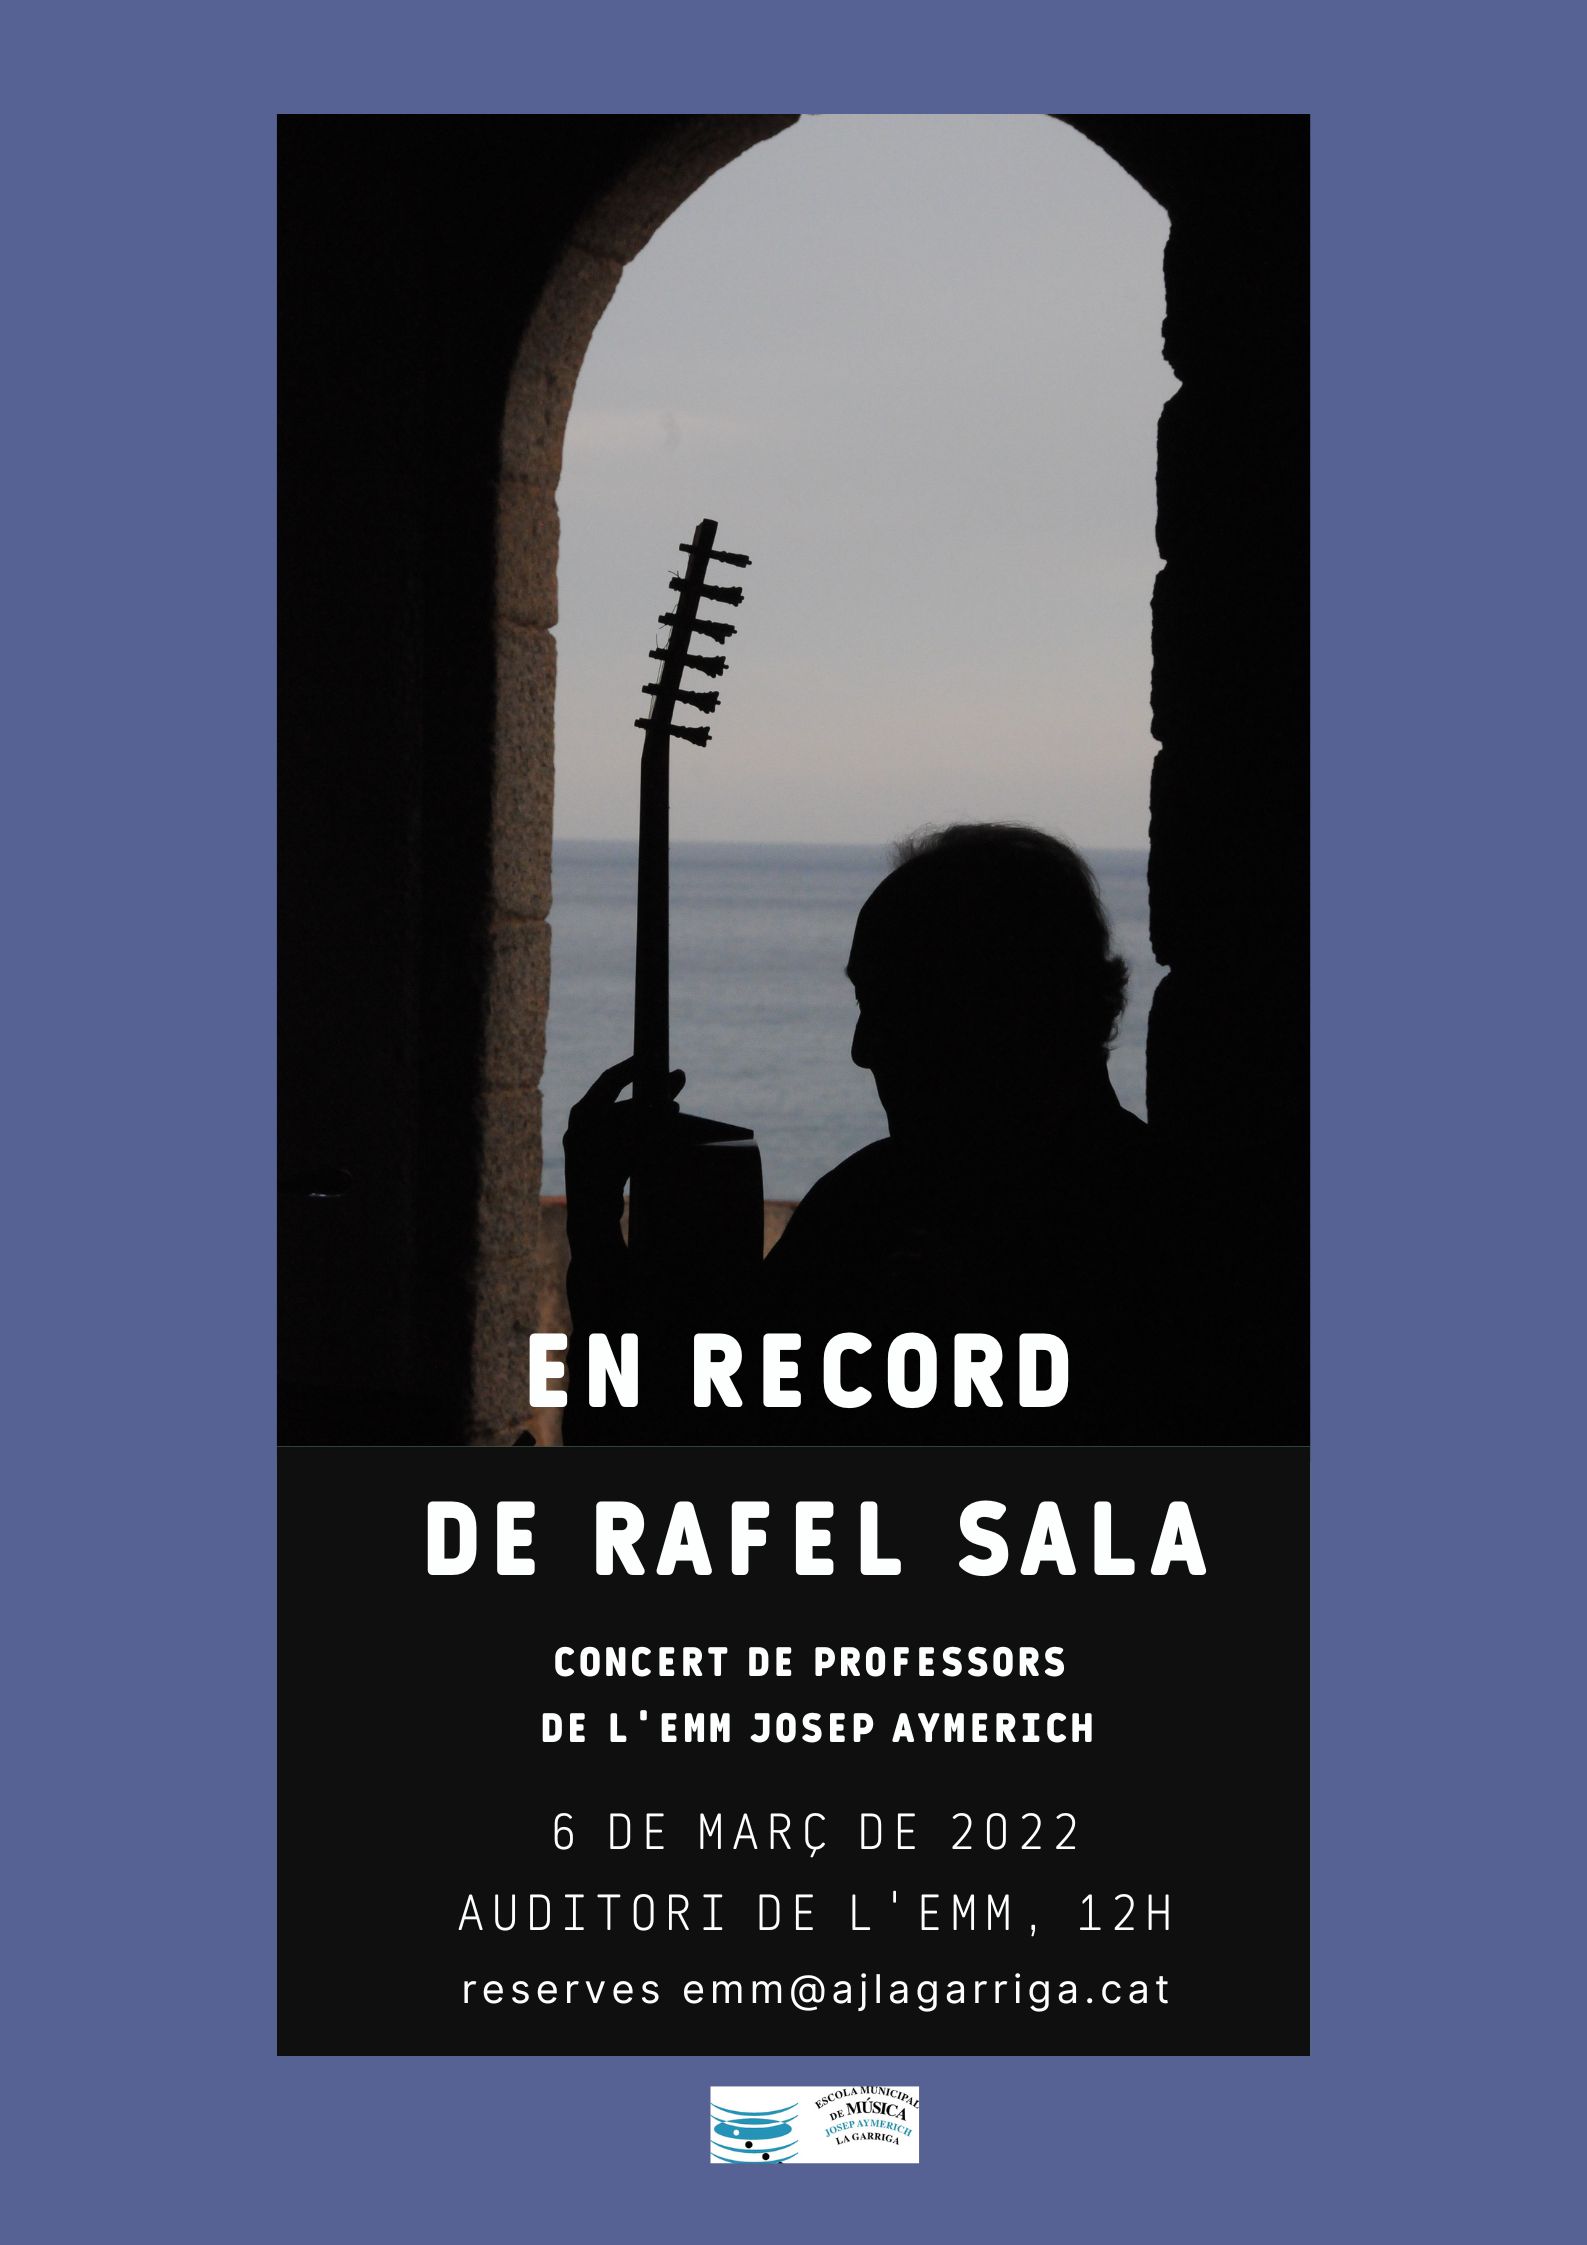 Concert en record del guitarrista Rafel Sala